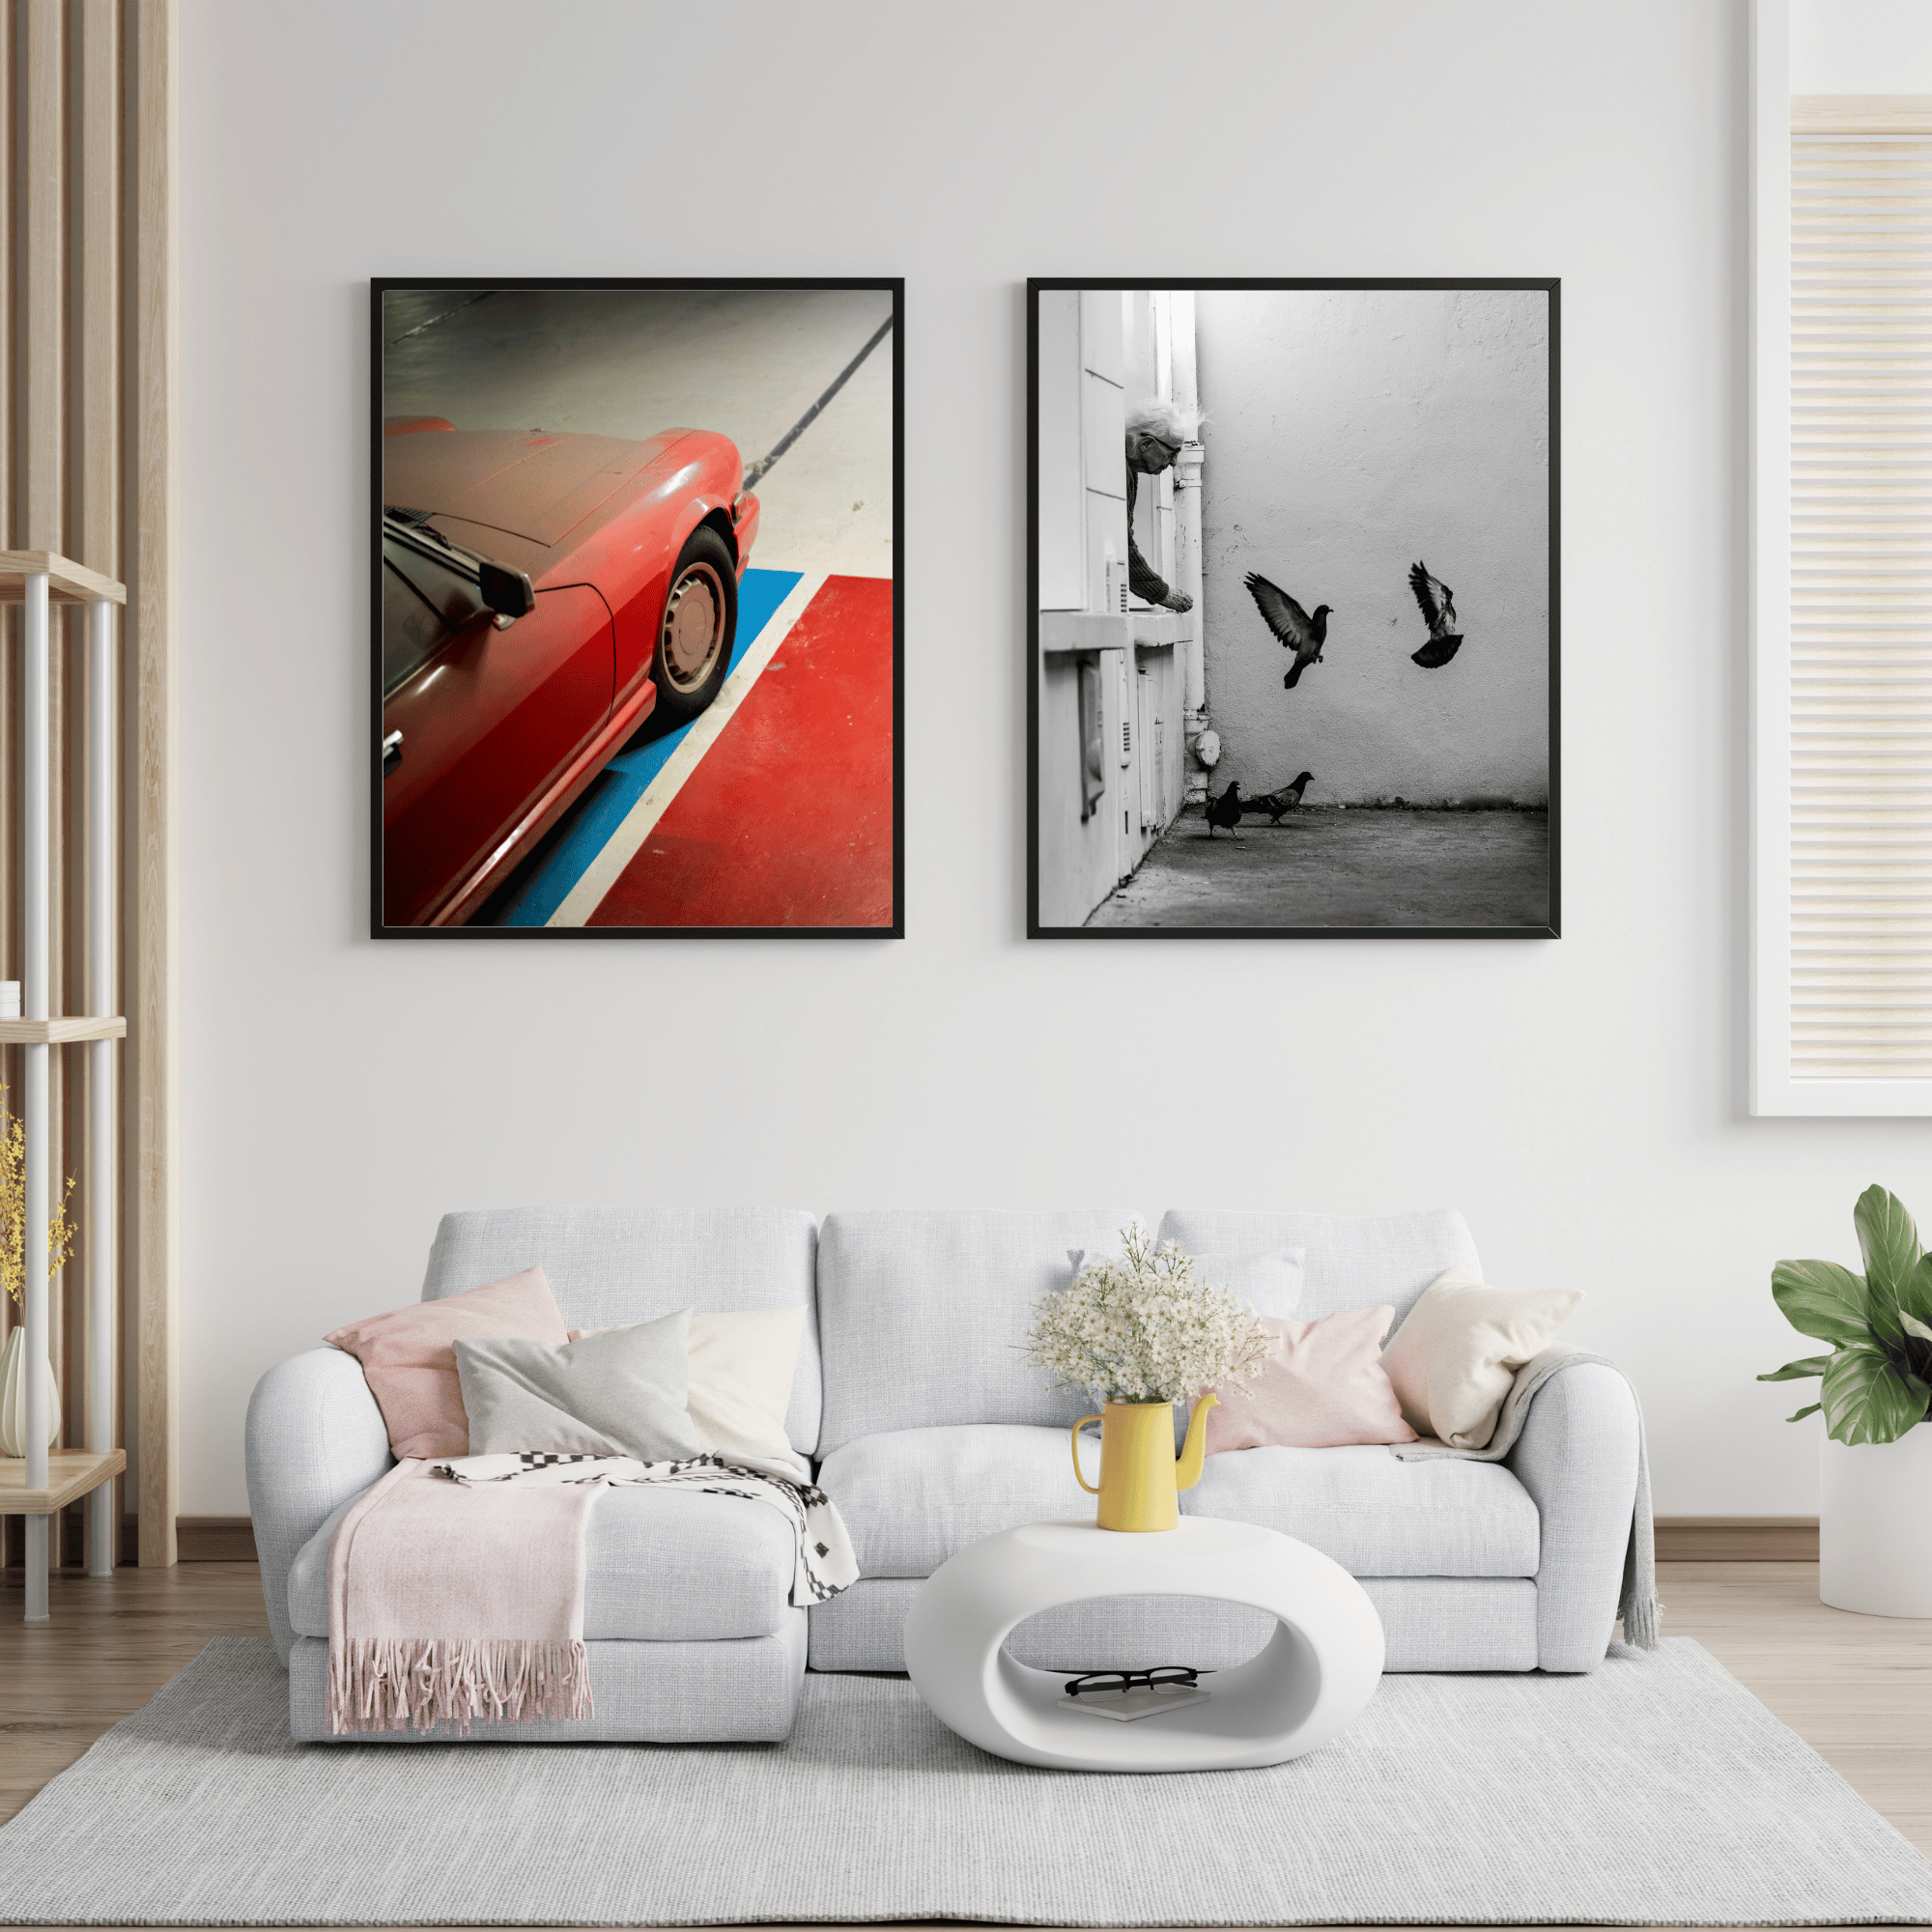 Catégorie de posters de photographie en noir et blanc, mettant en avant l'esthétique intemporelle des voitures. Découvrez ces superbes créations artistiques d'automobiles sur La Boutique du Poster Français.